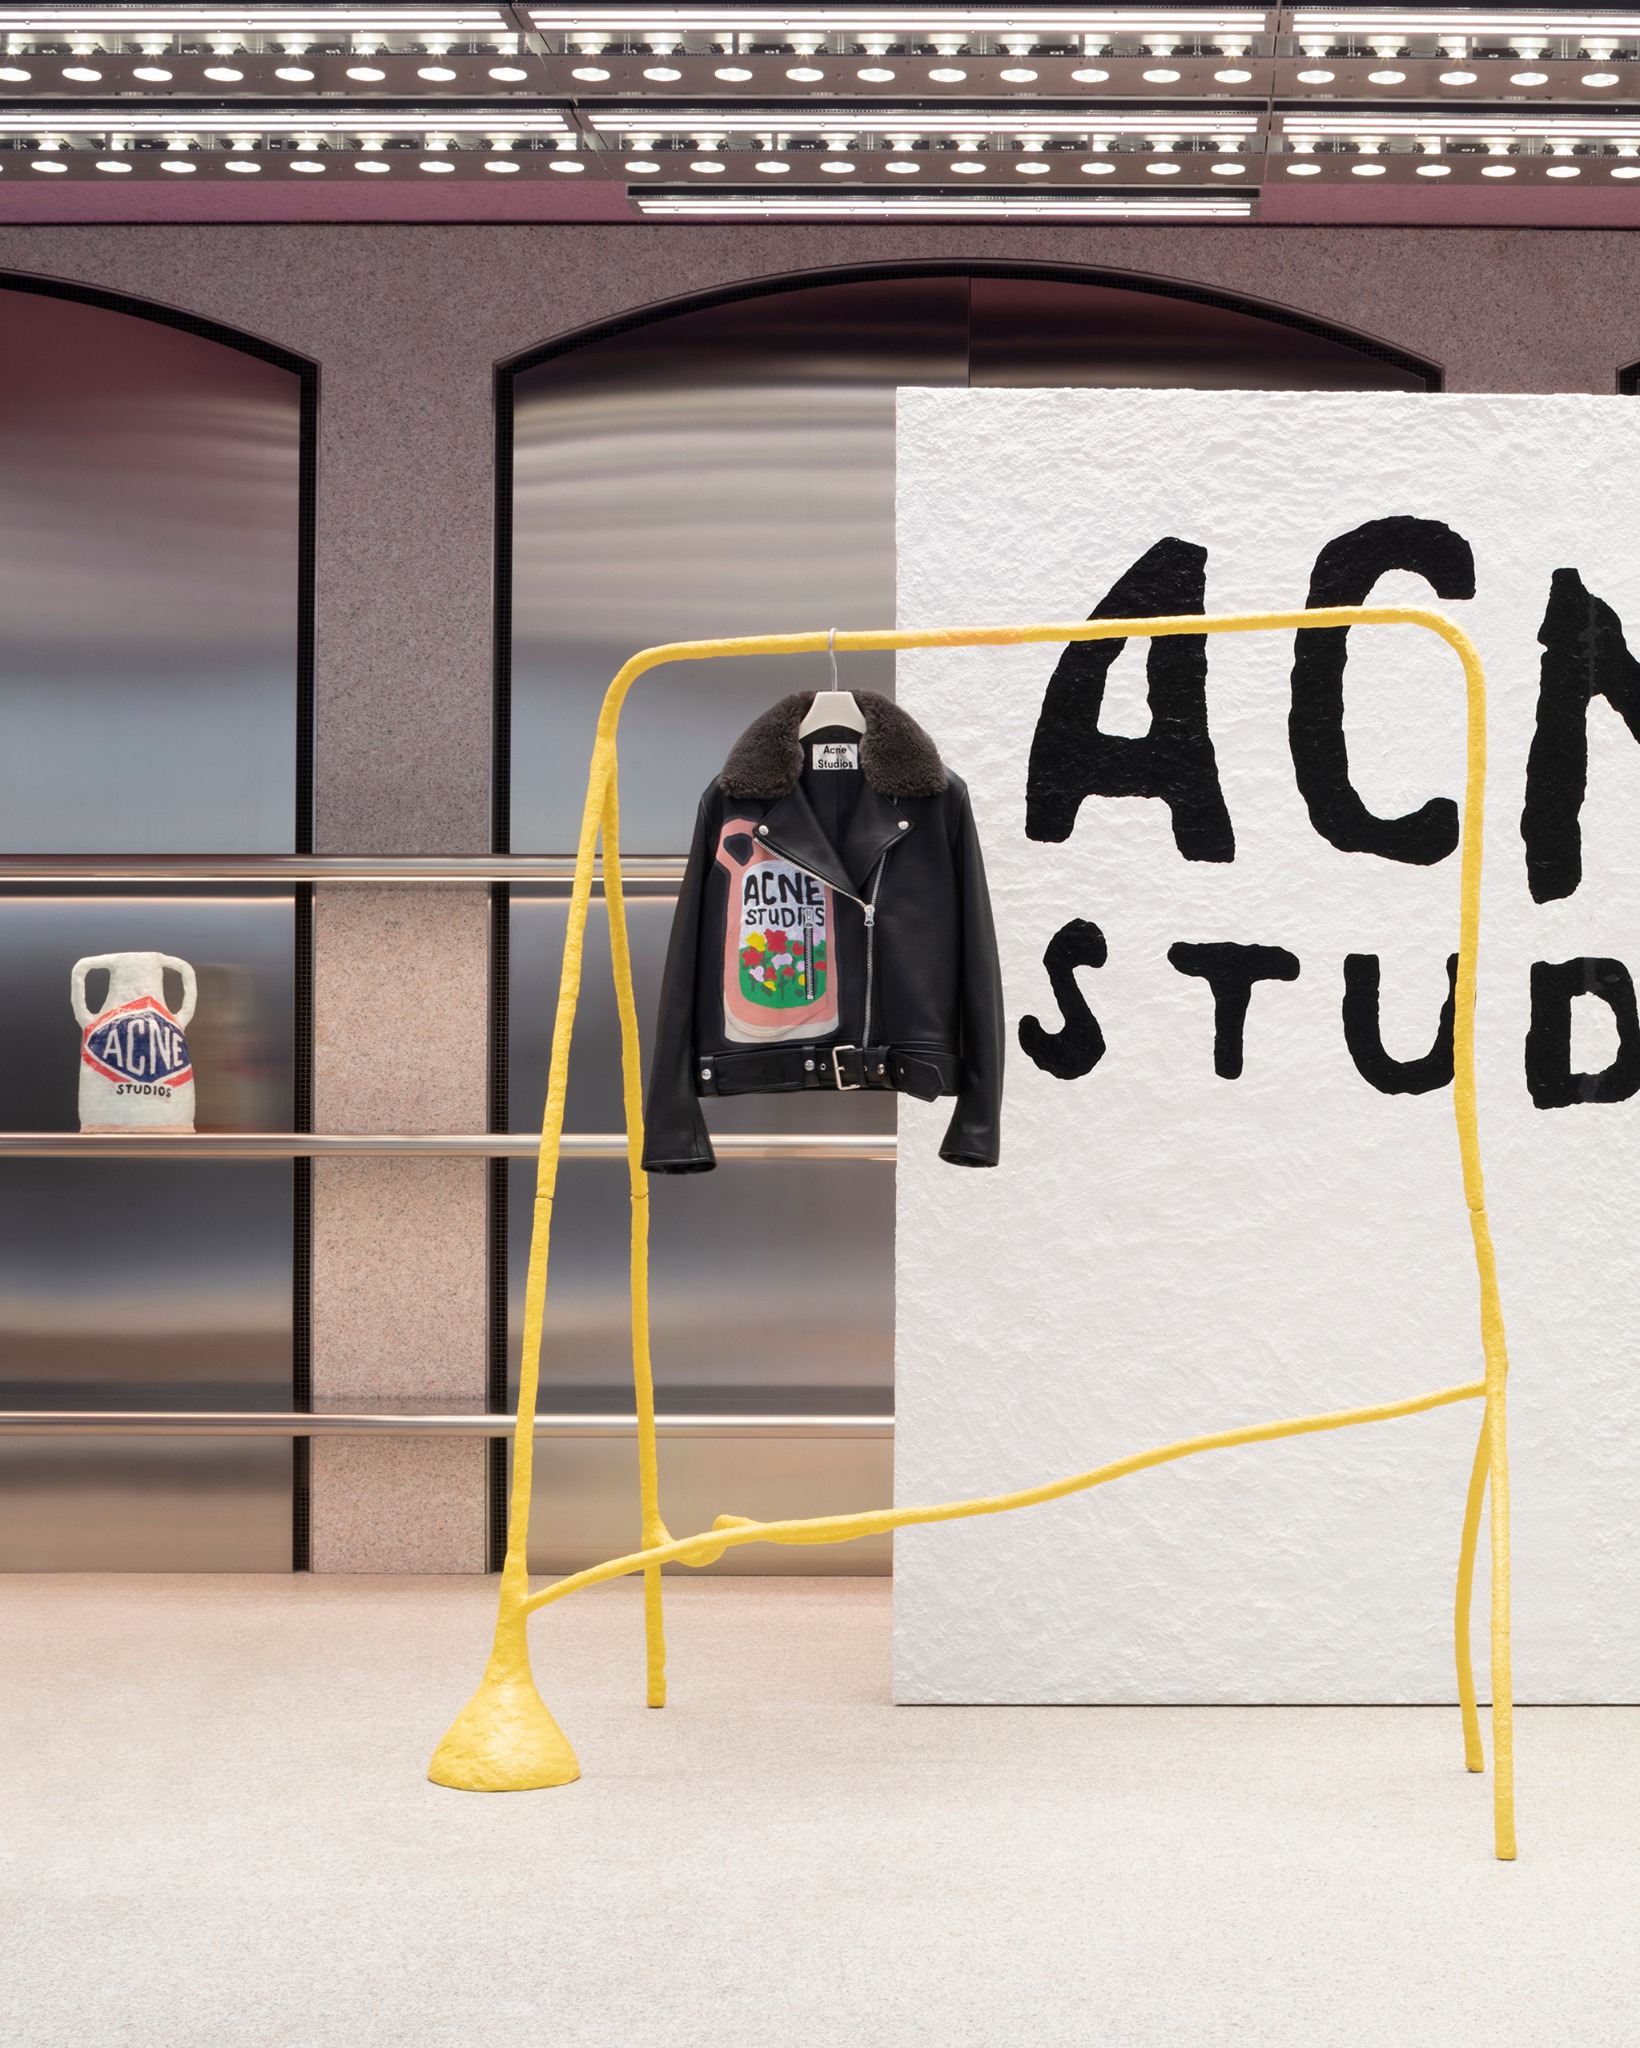 Acne Studios - Grant Levy